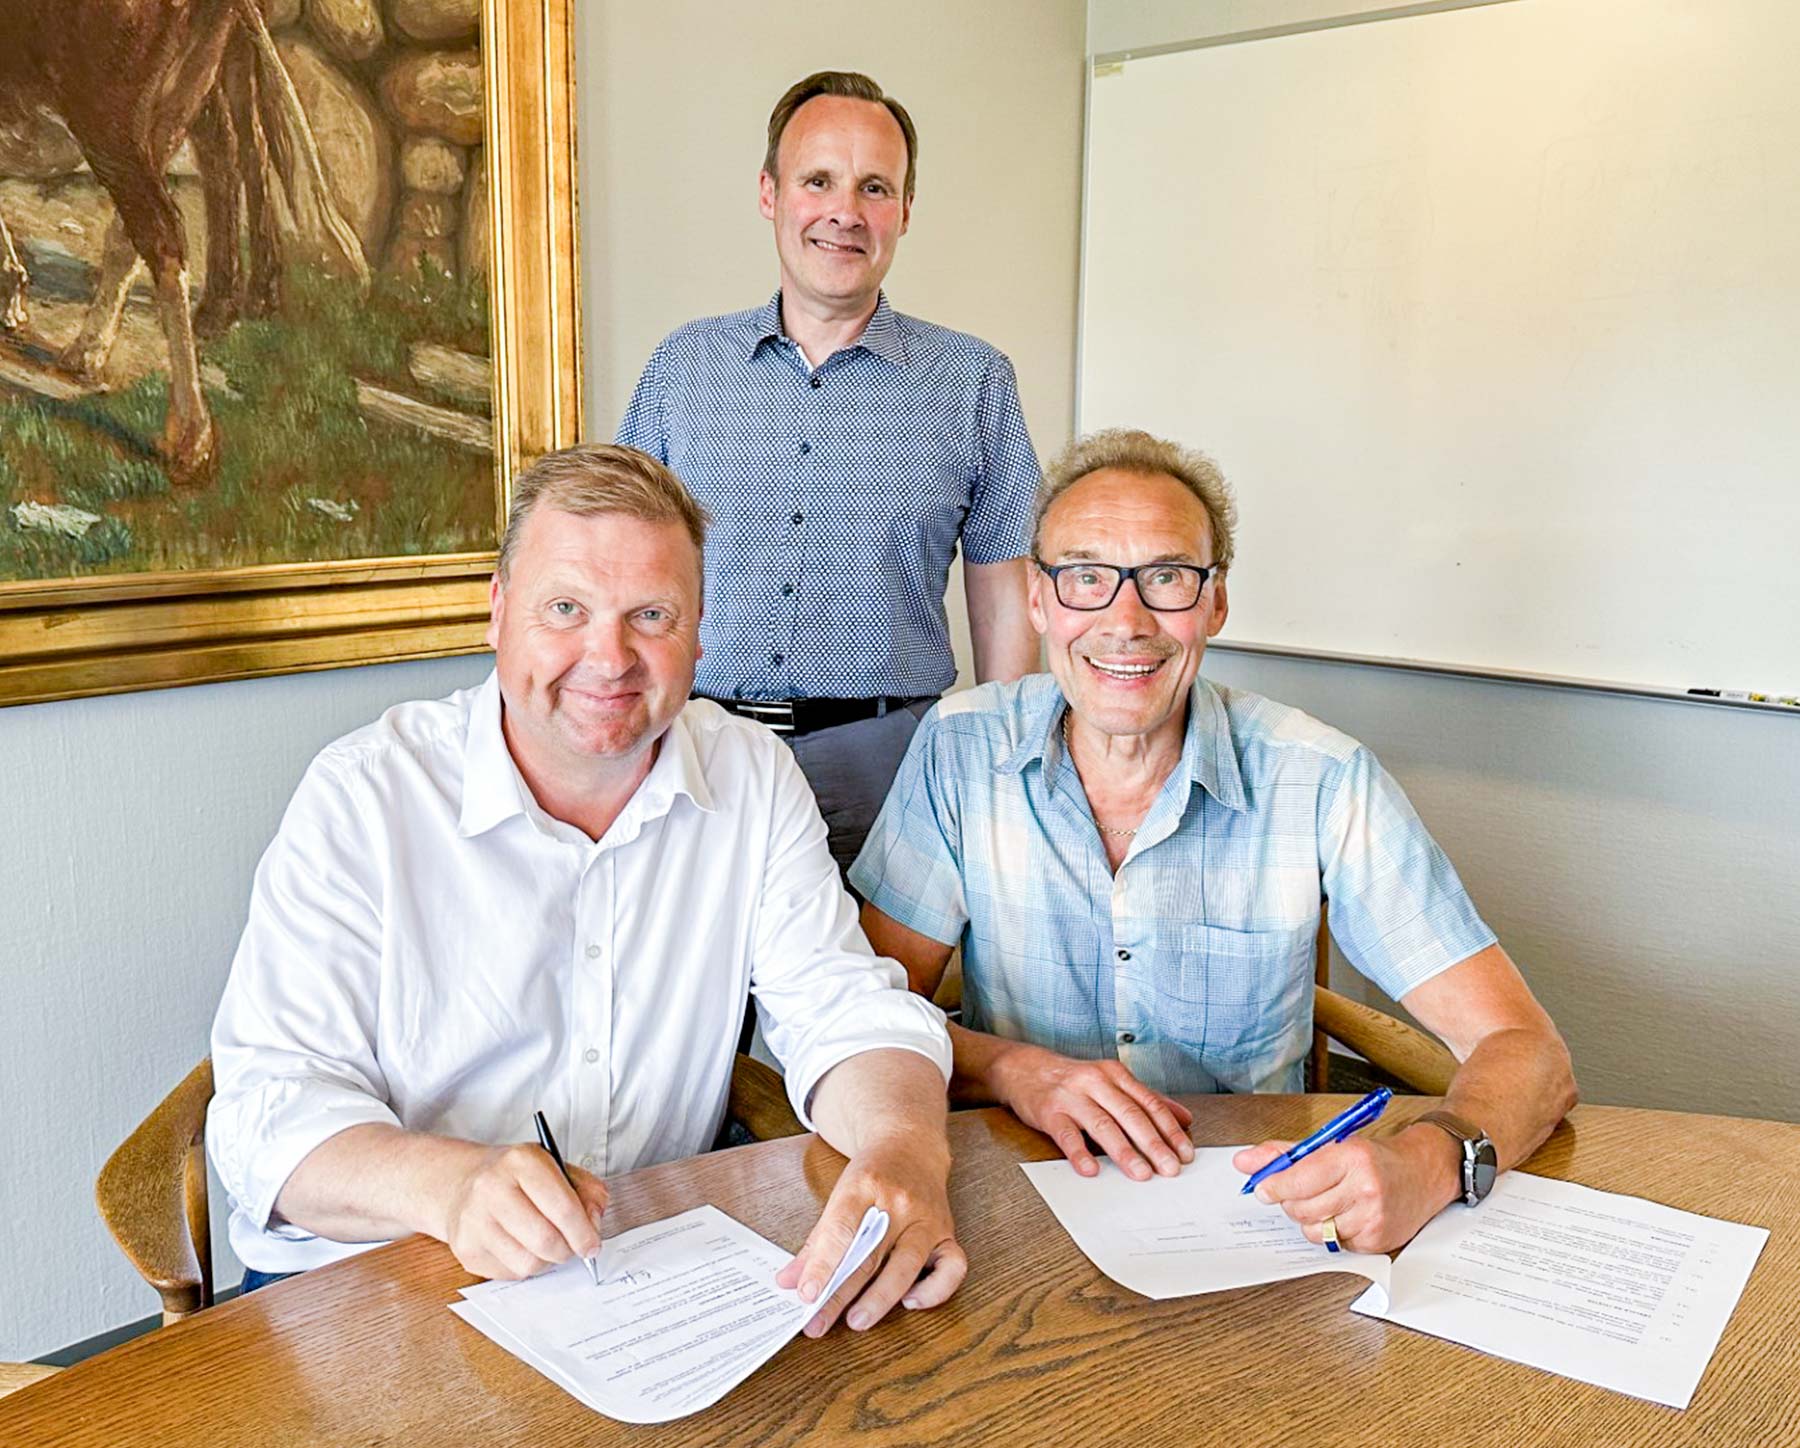 Dragørs borgmester, Kenneth Gøtterup (tv.), og bestyrelsesformand i Tårnby Forsyning Einer Lyduch underskriver aftalen, mens borgmesteren i Tårnby, Allan S. Andersen, ser til.